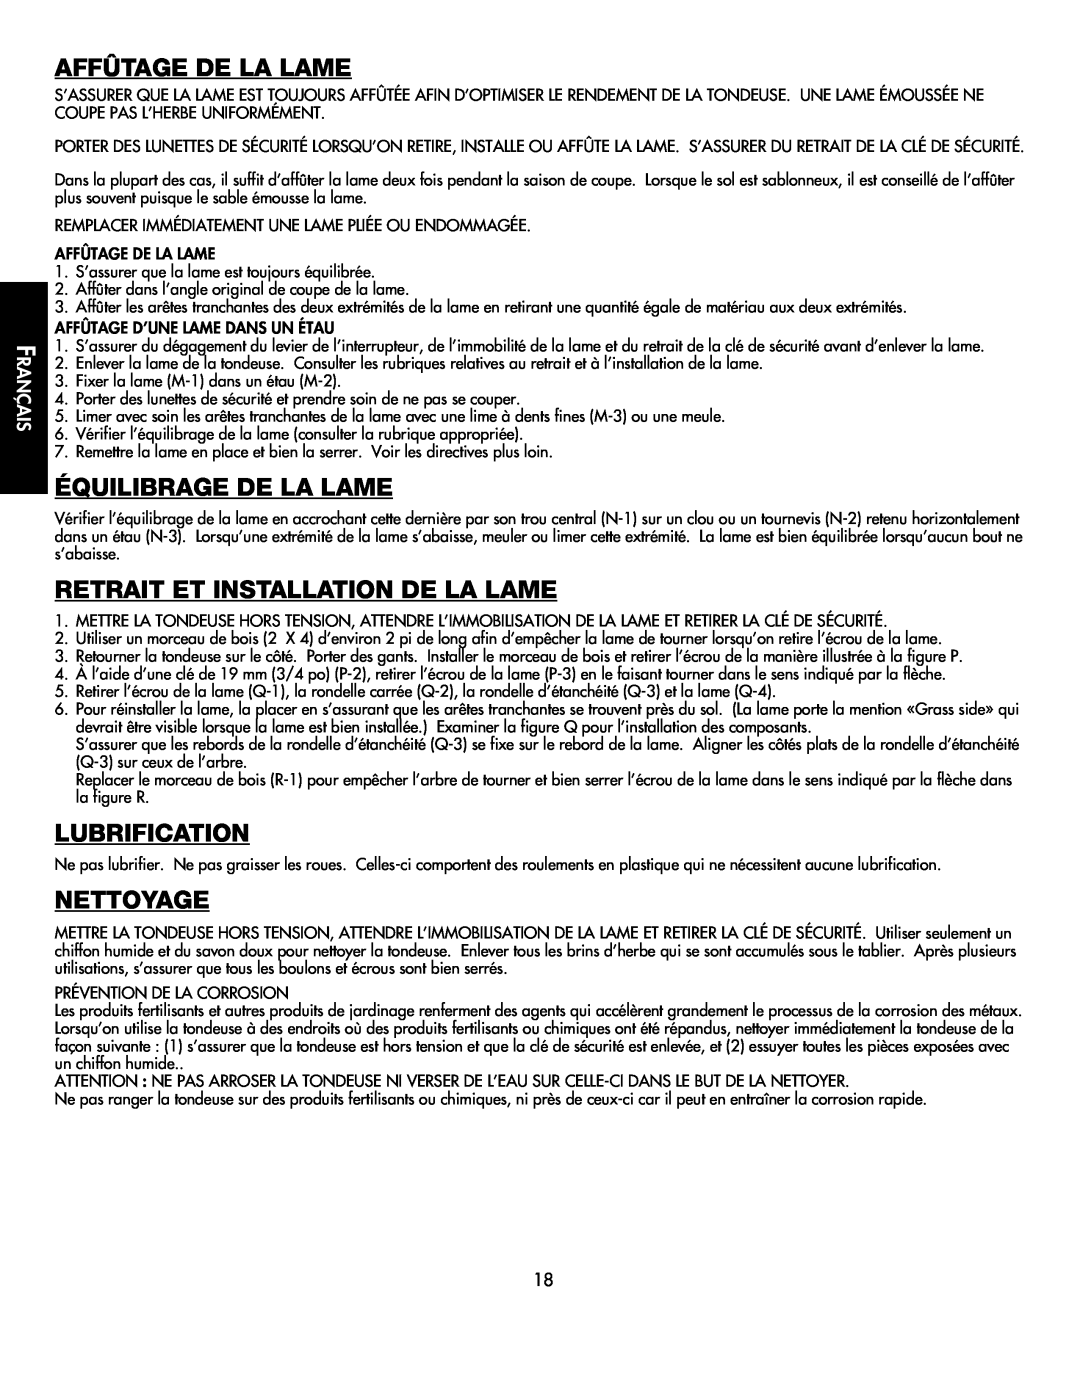 Black & Decker CMM1000 Affûtage De La Lame, Équilibrage De La Lame, Retrait Et Installation De La Lame, Lubrification 